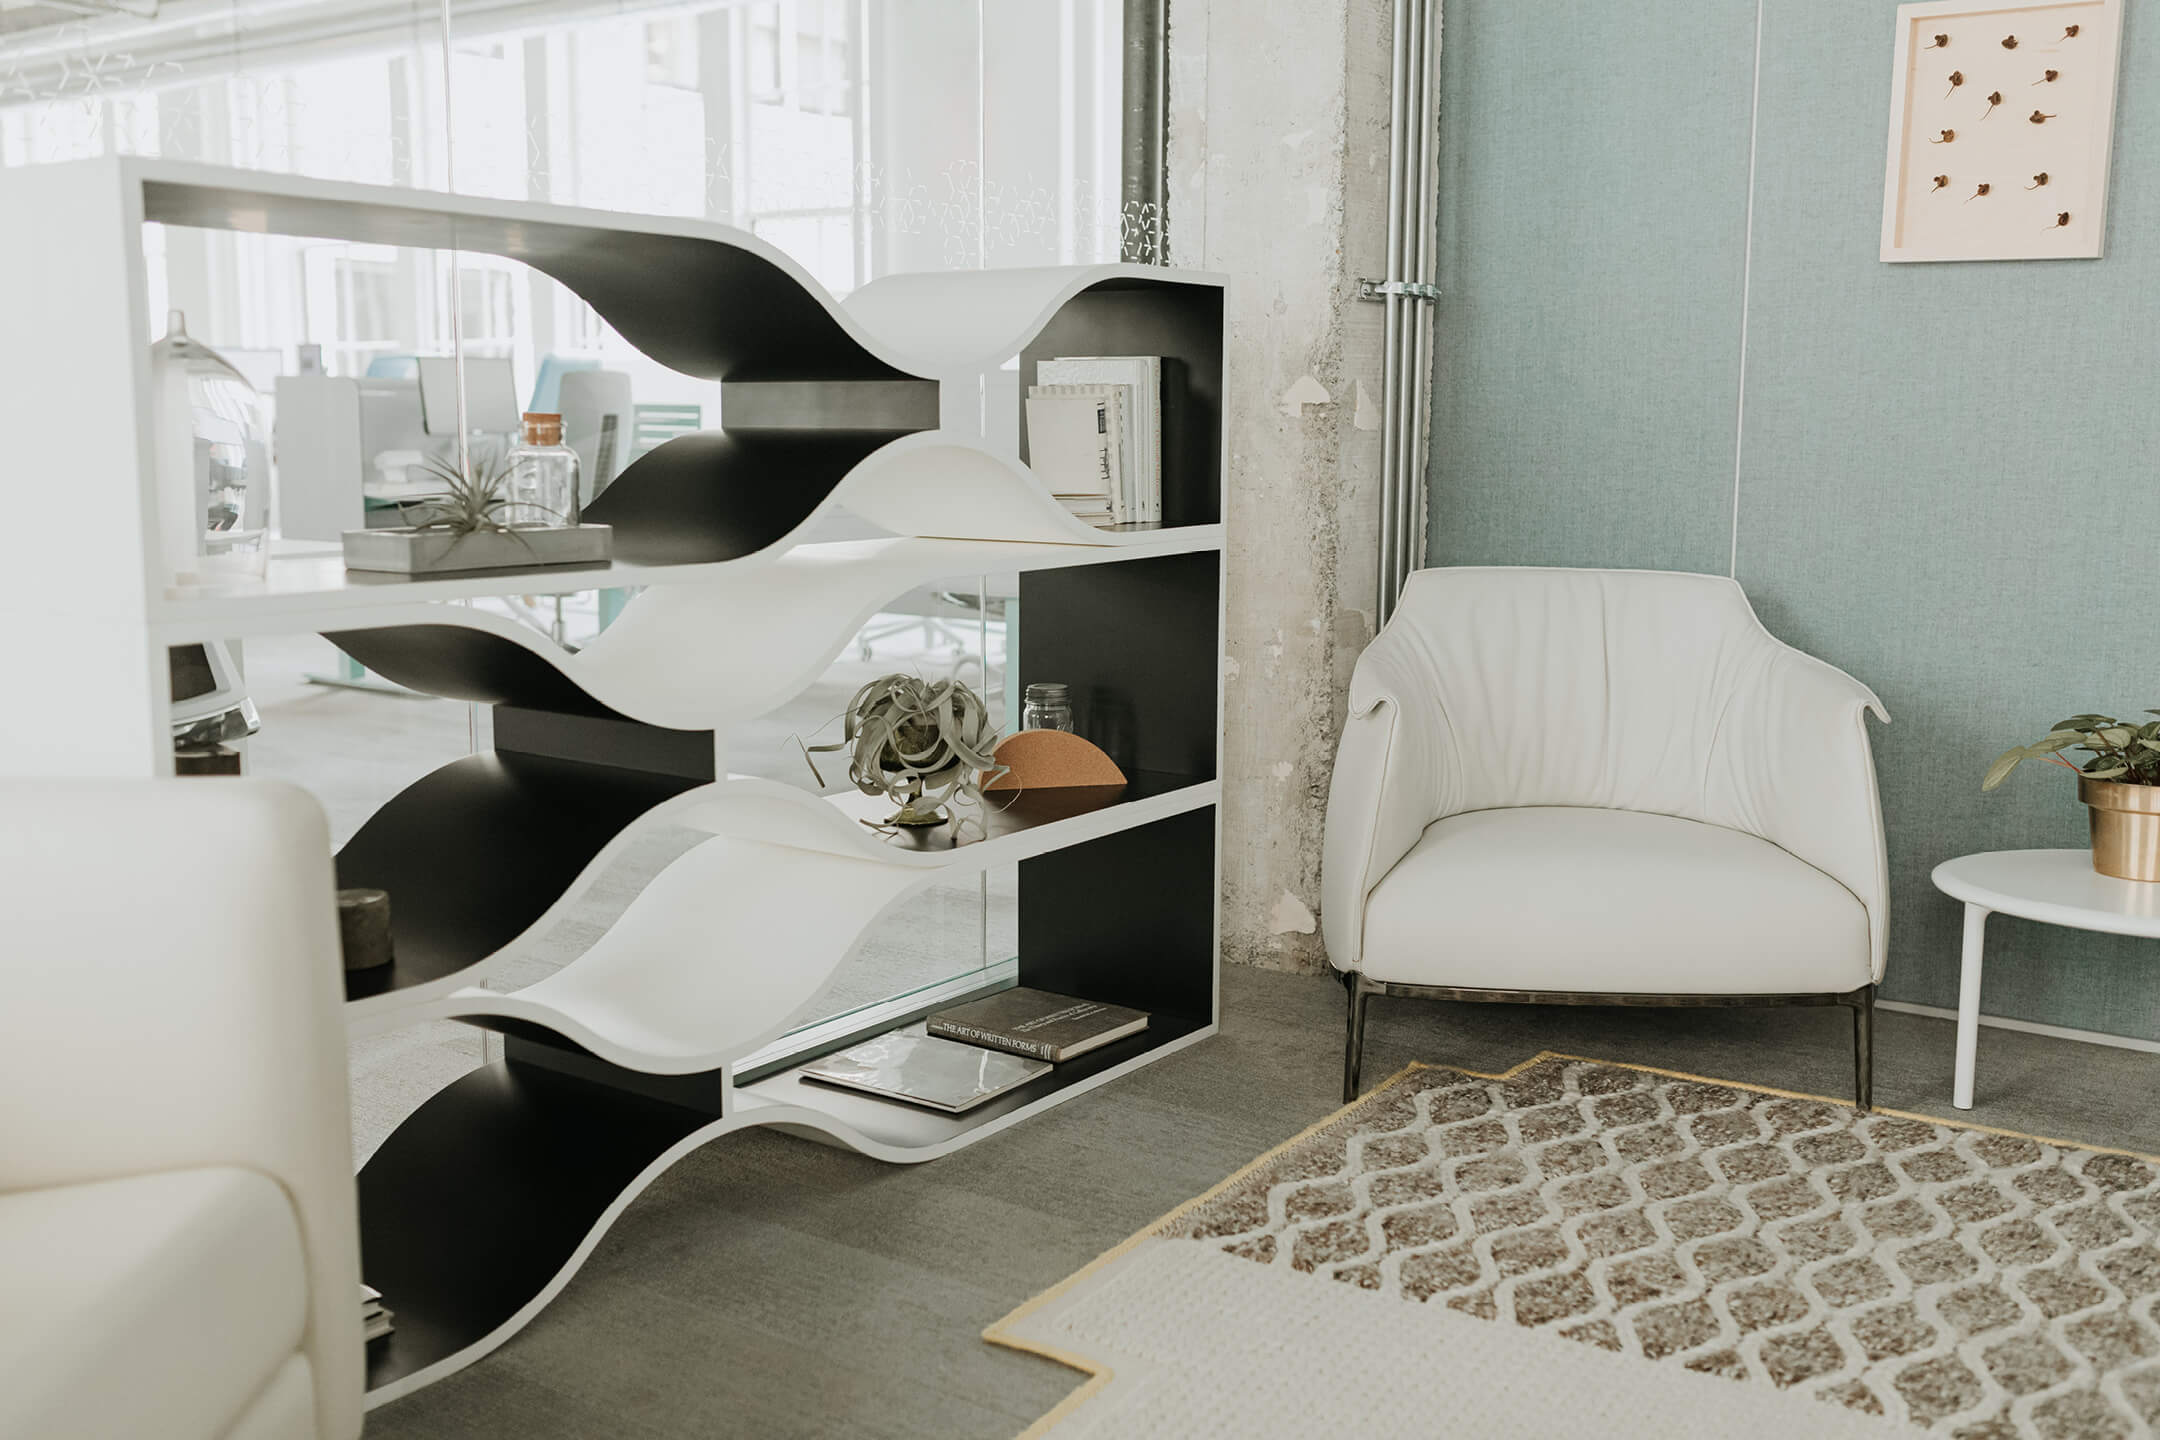 Haworth Design Studio Designer in private office area with white chair